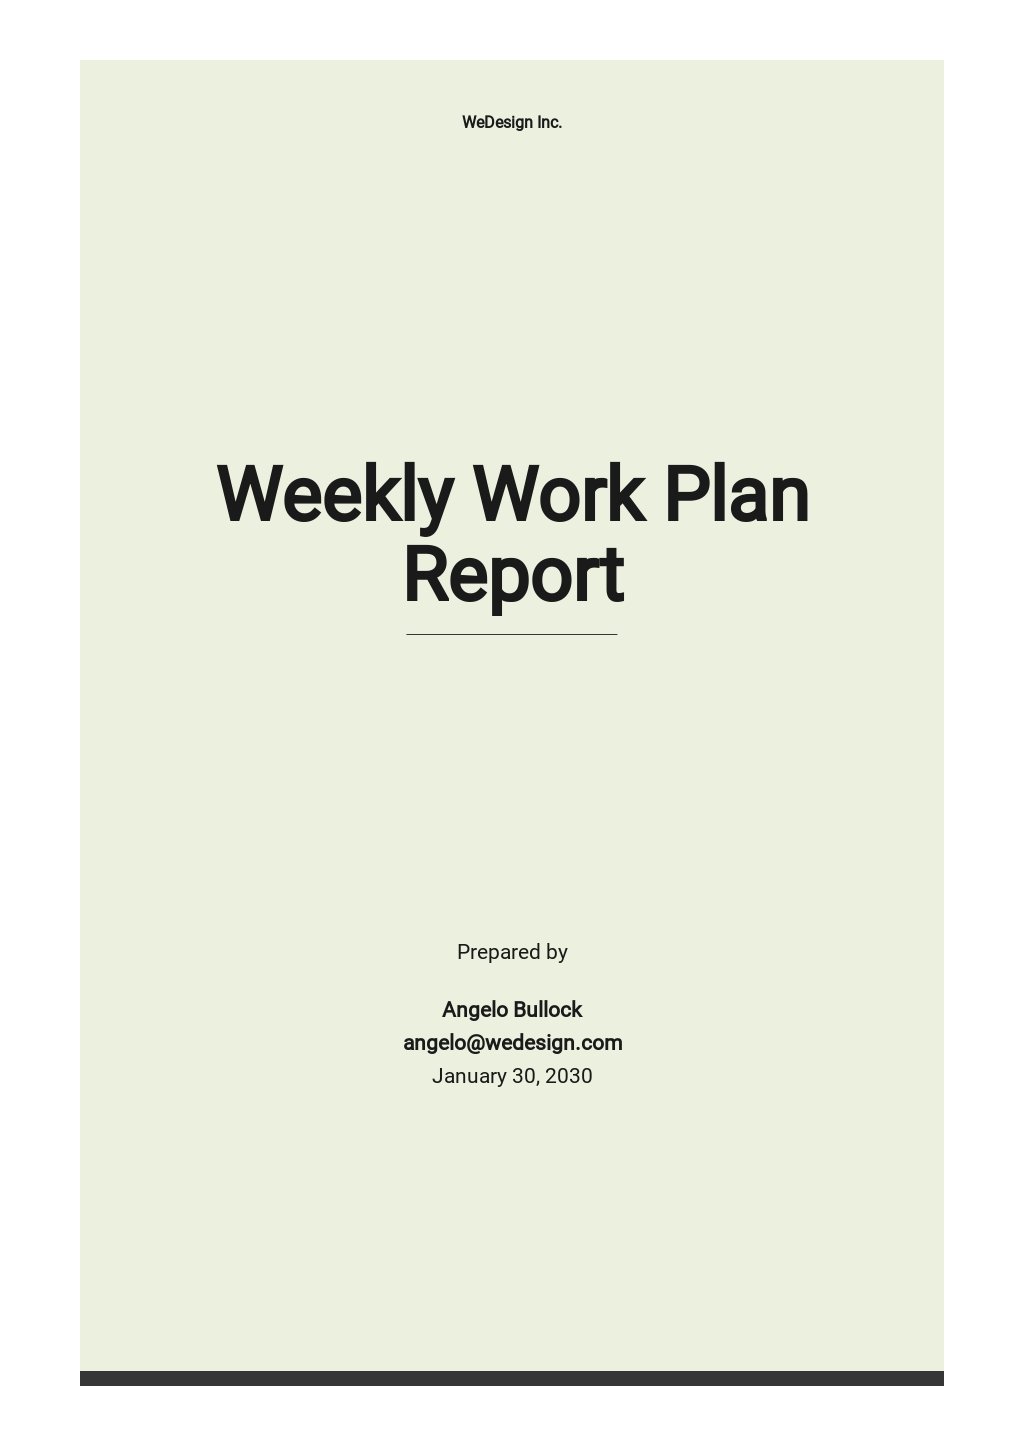 Weekly Work Plan Report Template.jpe